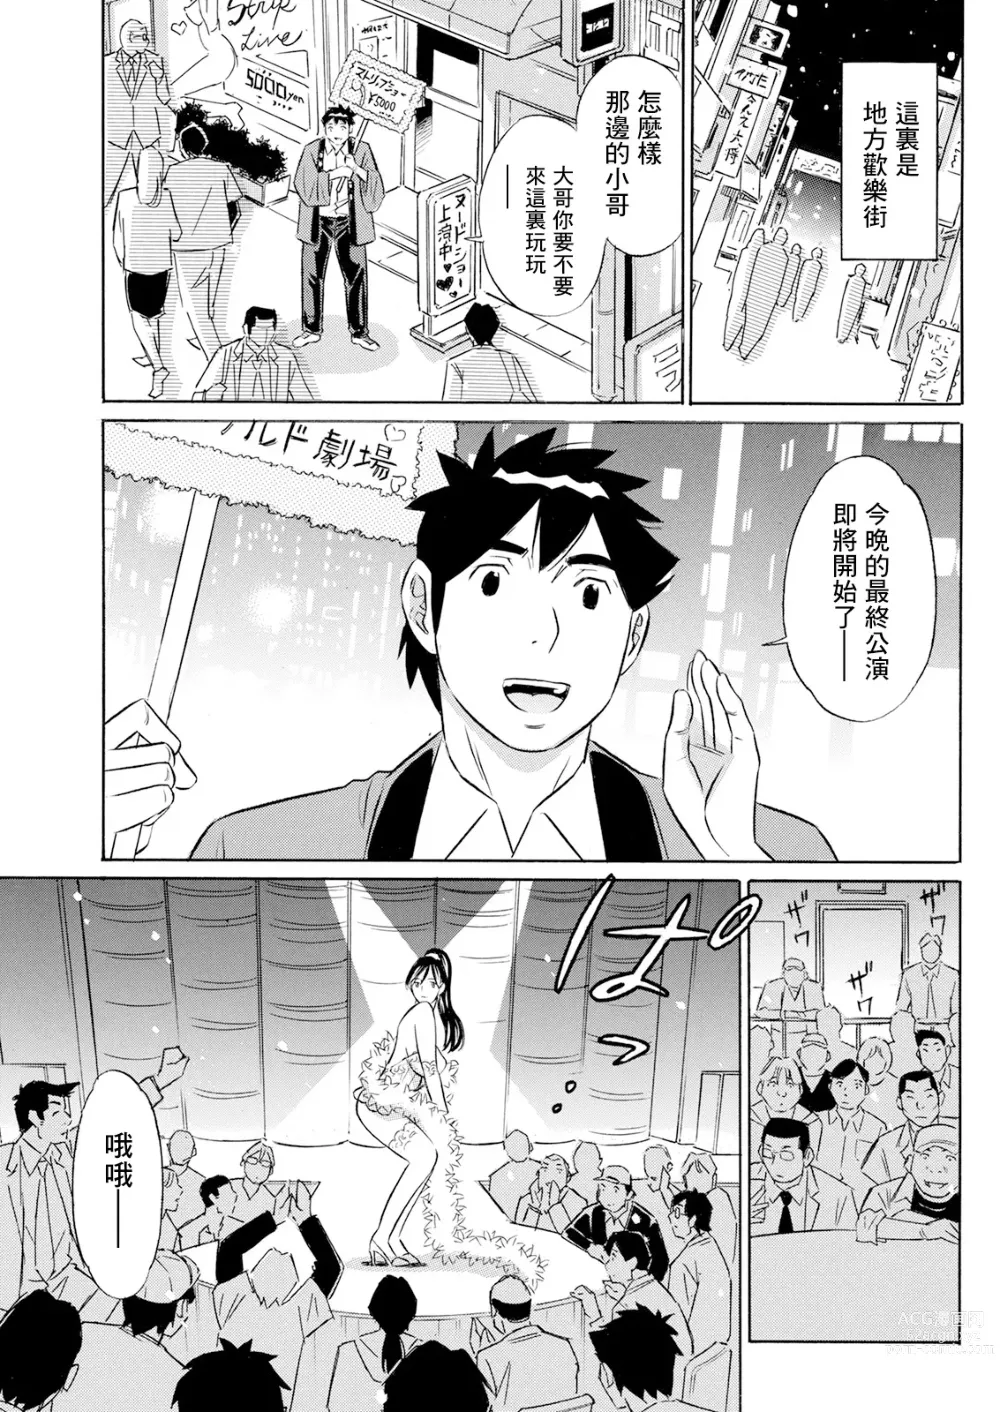 Page 1 of manga Junjou Strip